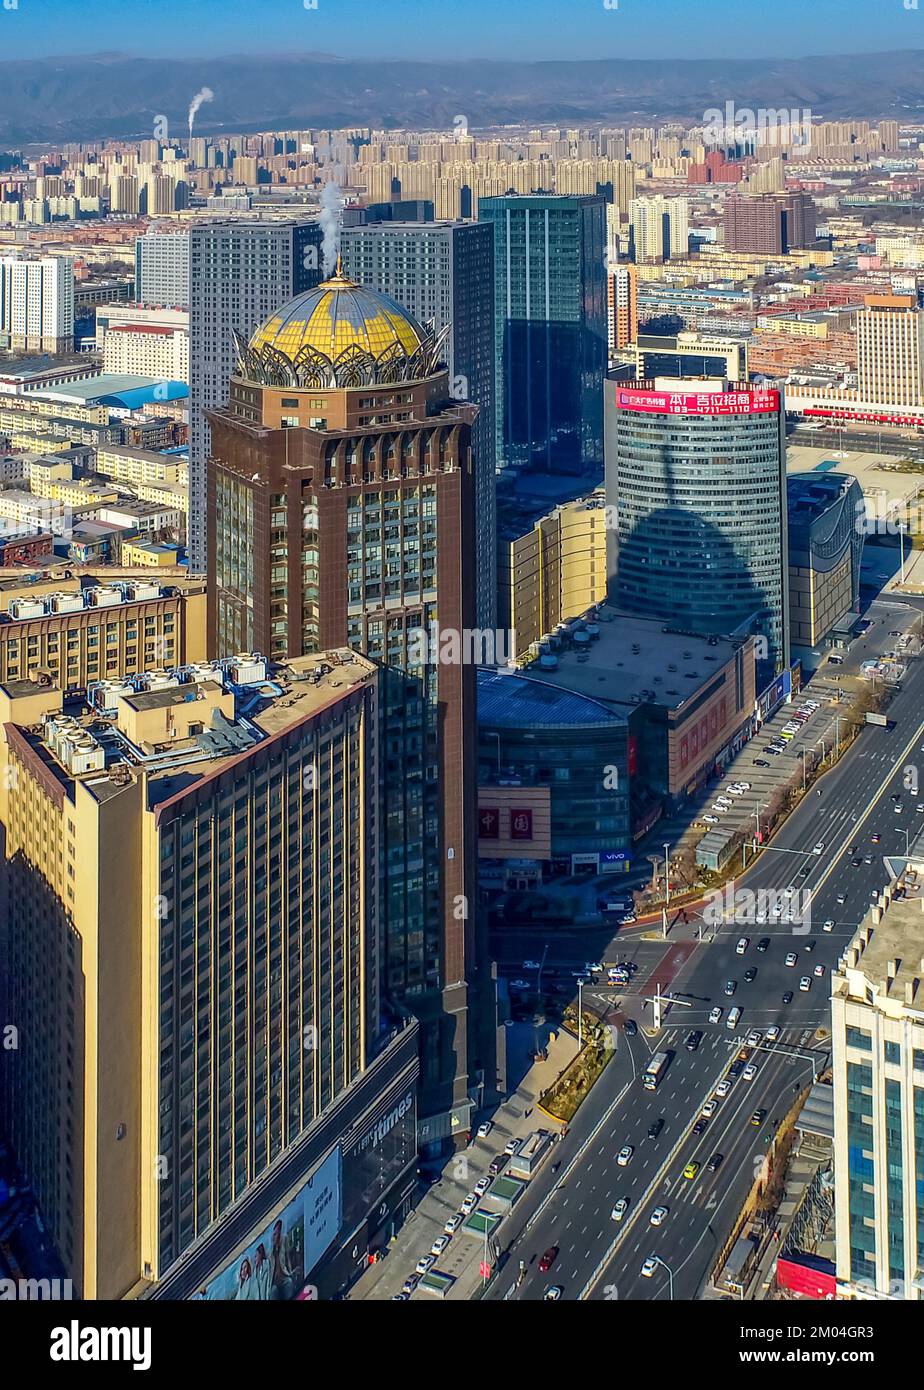 HOHHOT, CHIAN - 4. DEZEMBER 2022 - Luftfotos von Fahrzeugen, die durch eine Straße in Hohhot fahren, innere Mongolei Autonome Region, China, 4. Dezember 20 Stockfoto